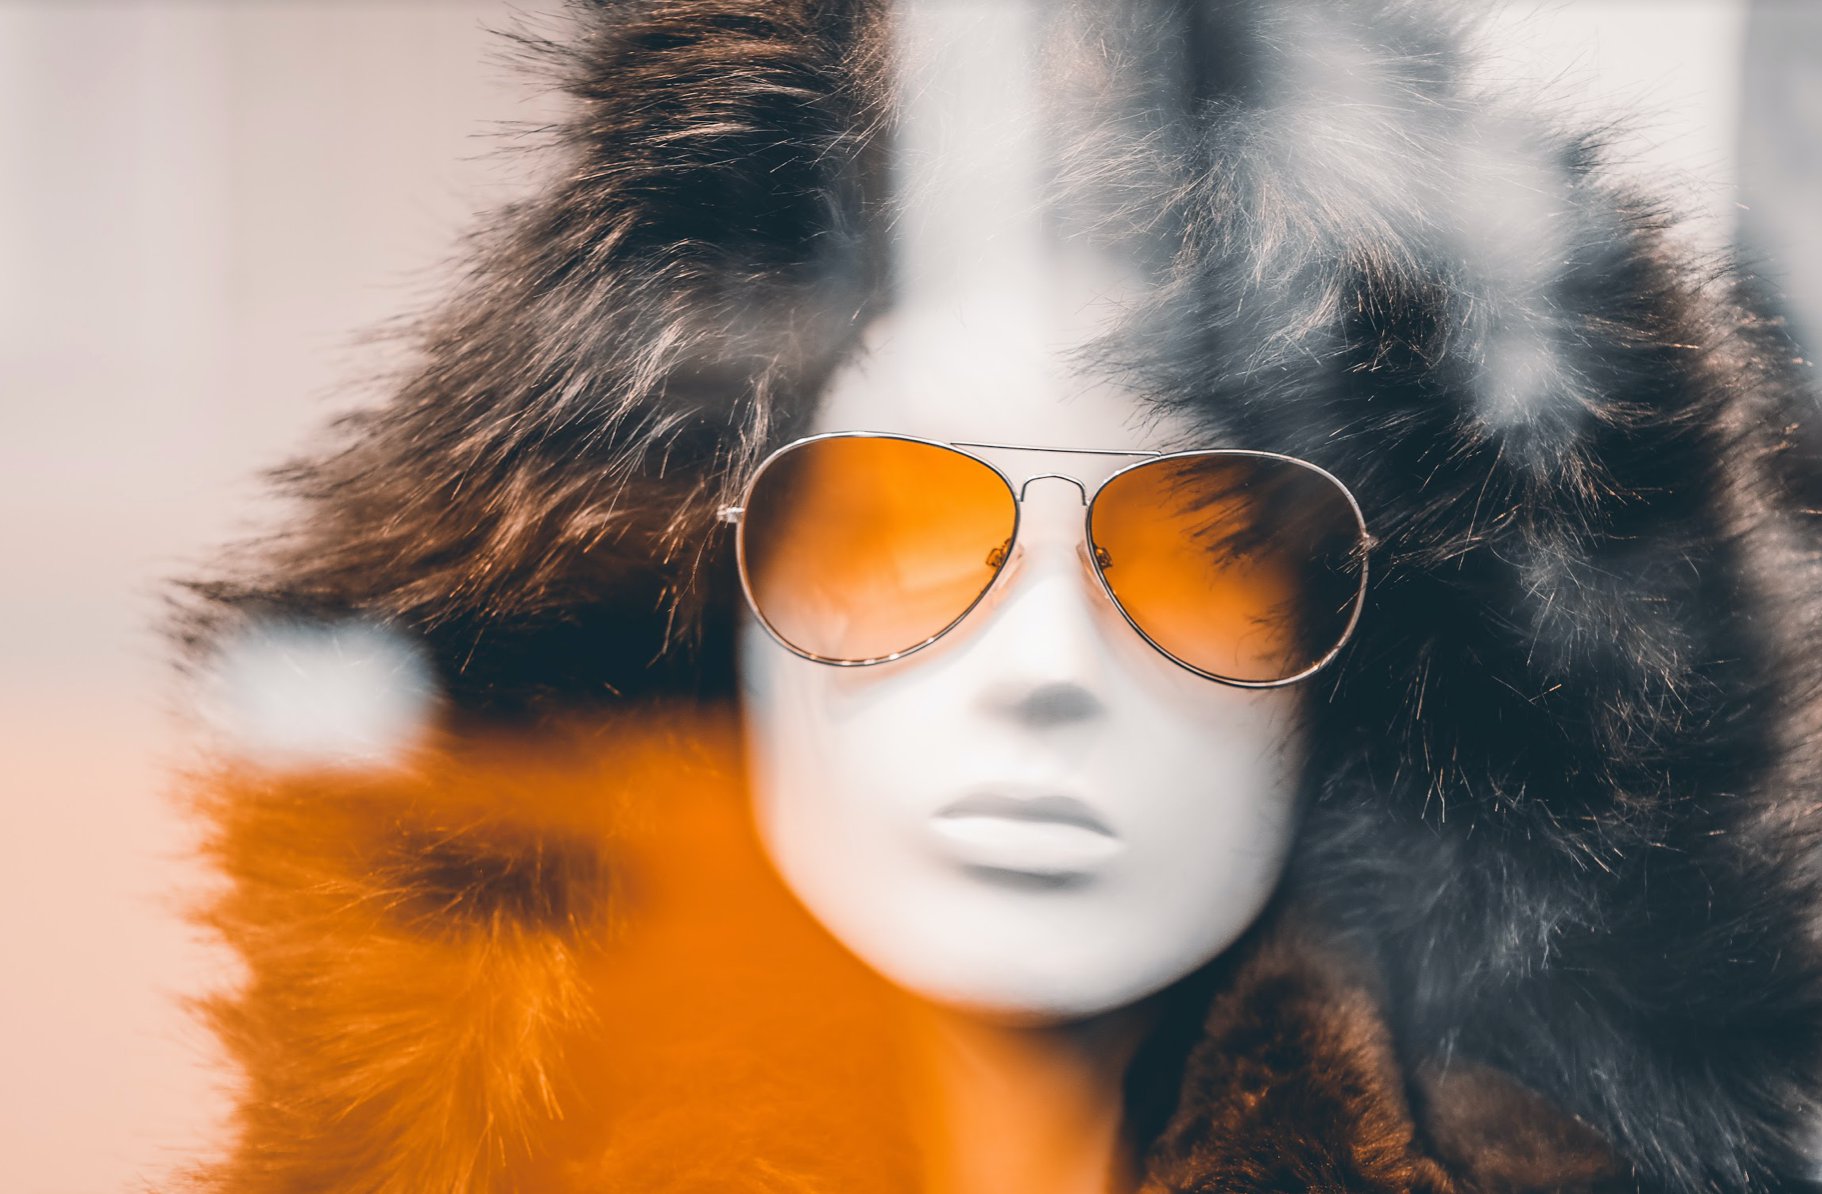 Fur coat photo by Alem Sanchez